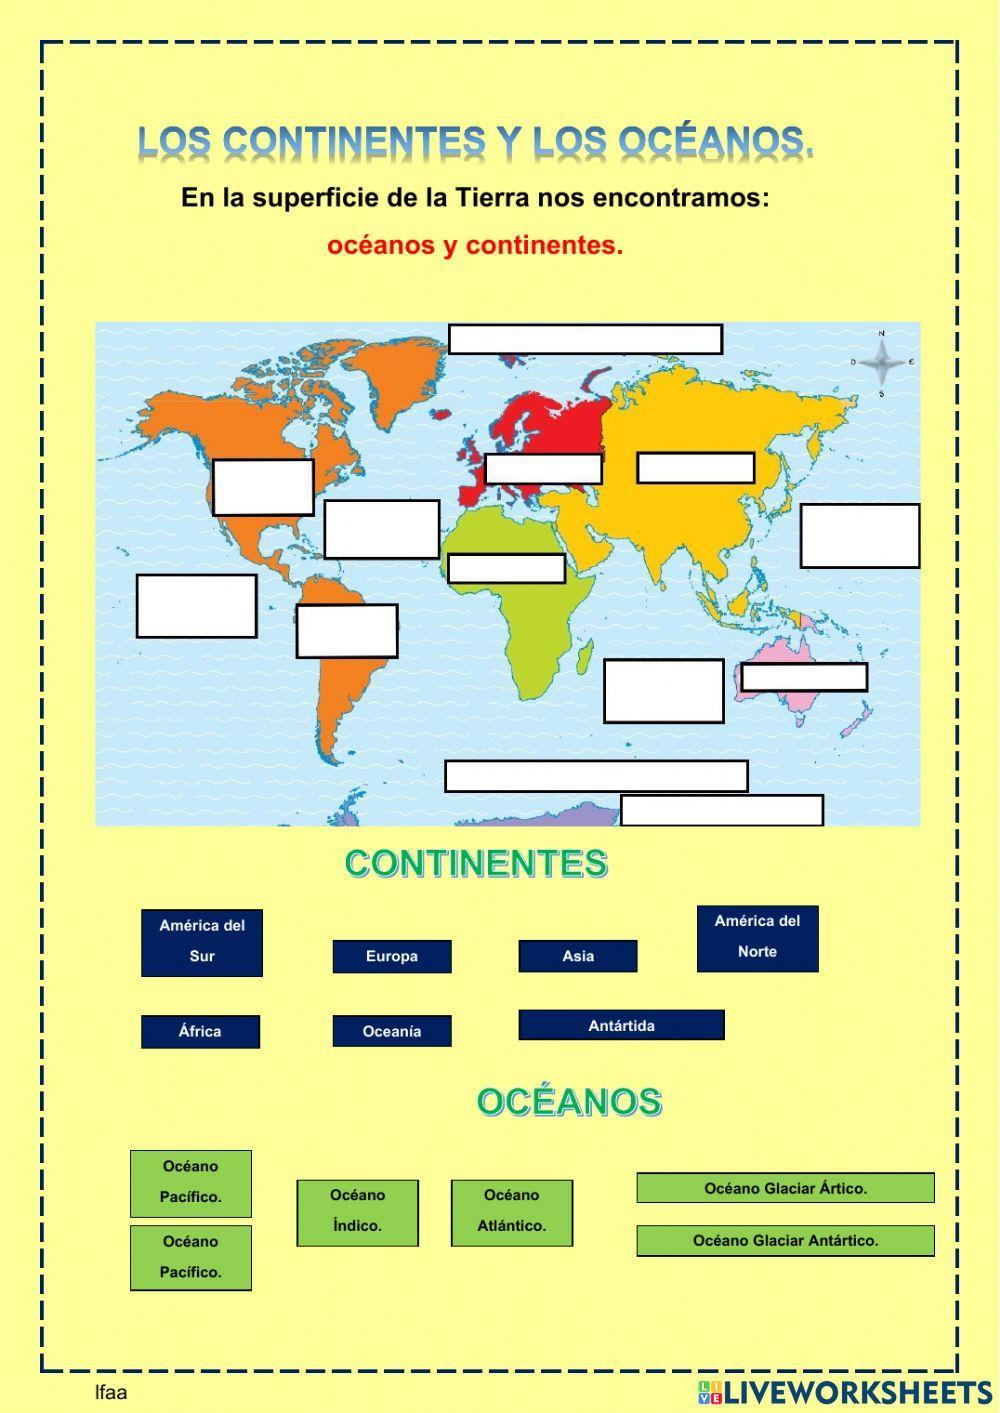 Océanos y continentes